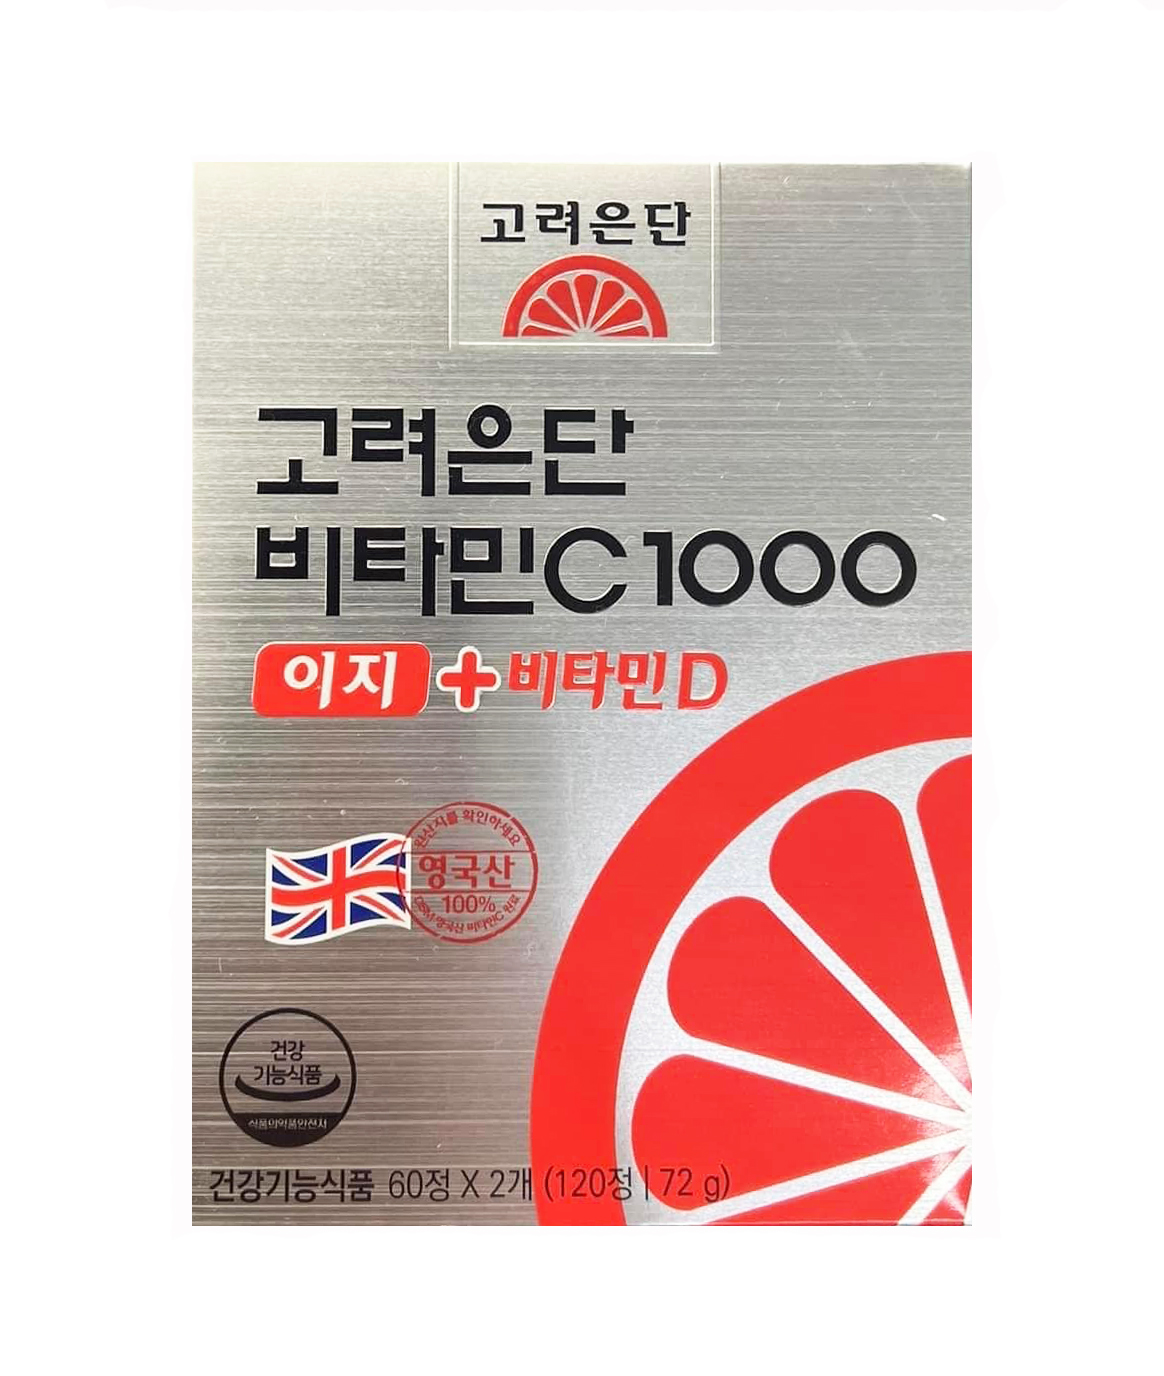 Vitamin C Hàn Quốc 1000 có công dụng gì?
